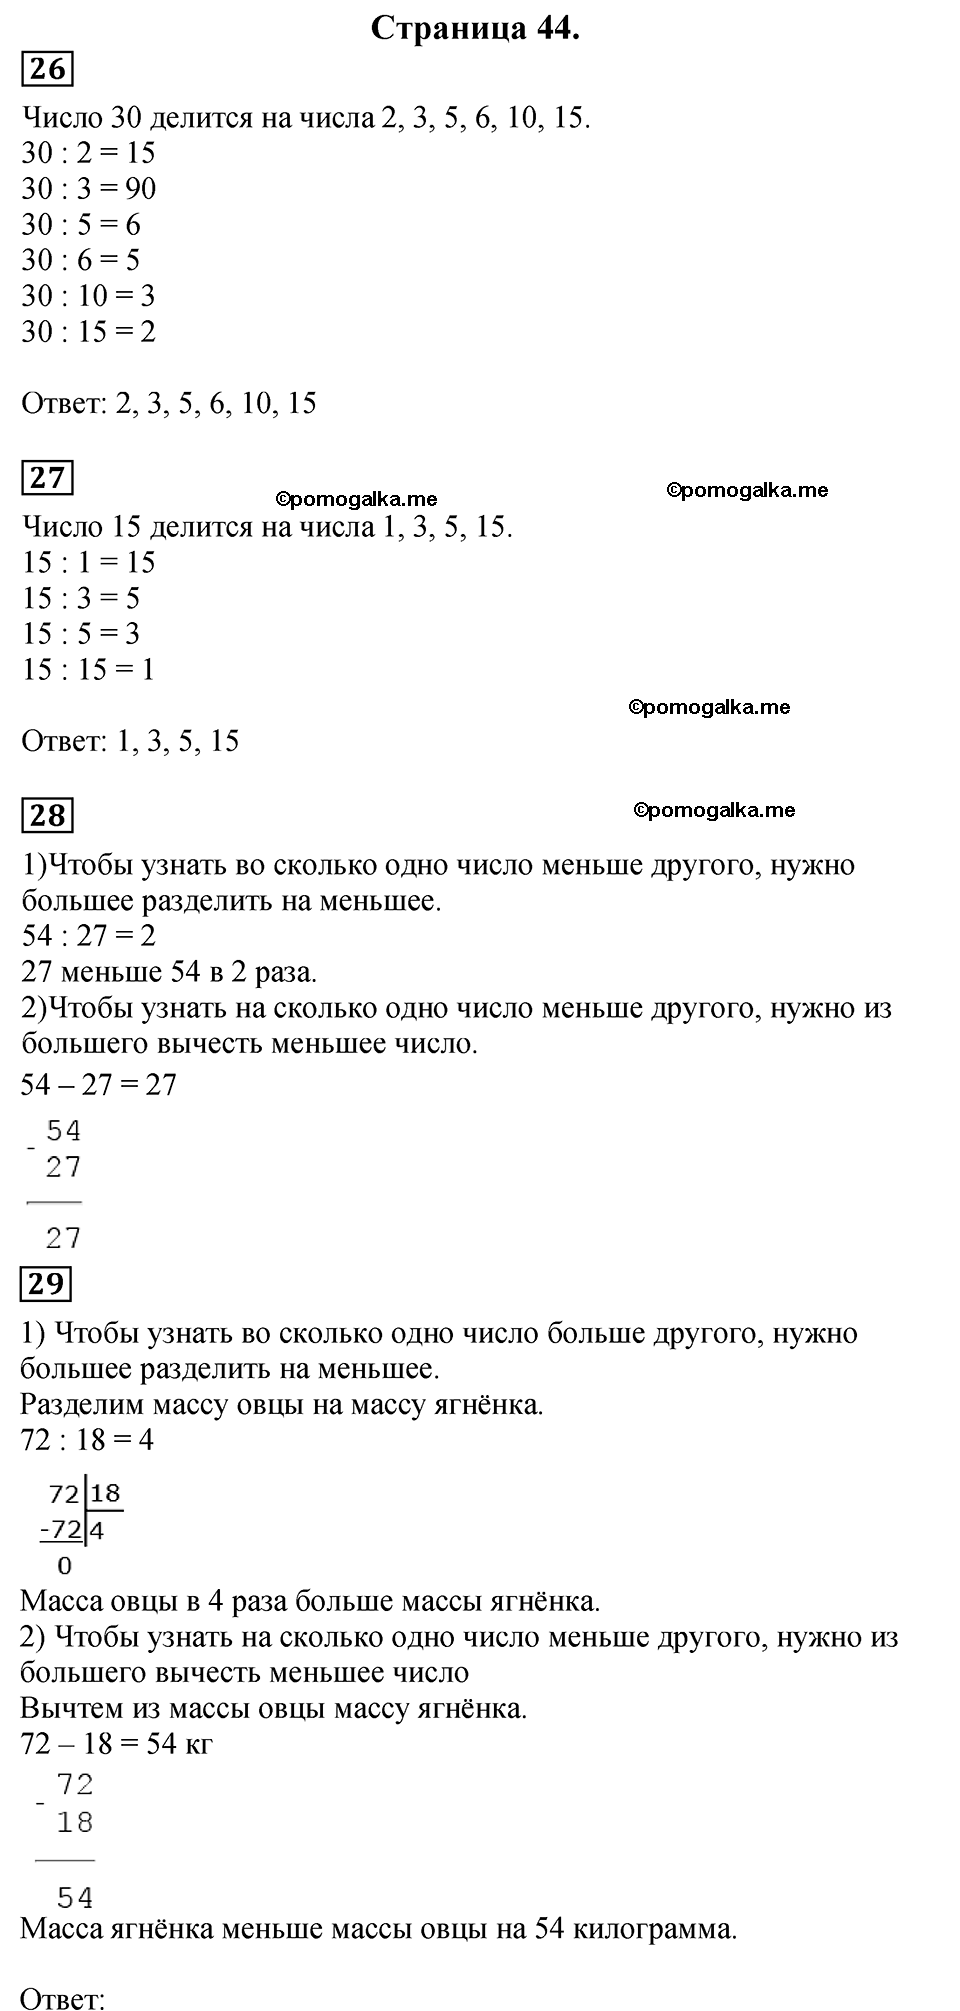 Страница №44 Часть 2 математика 3 класс Дорофеев